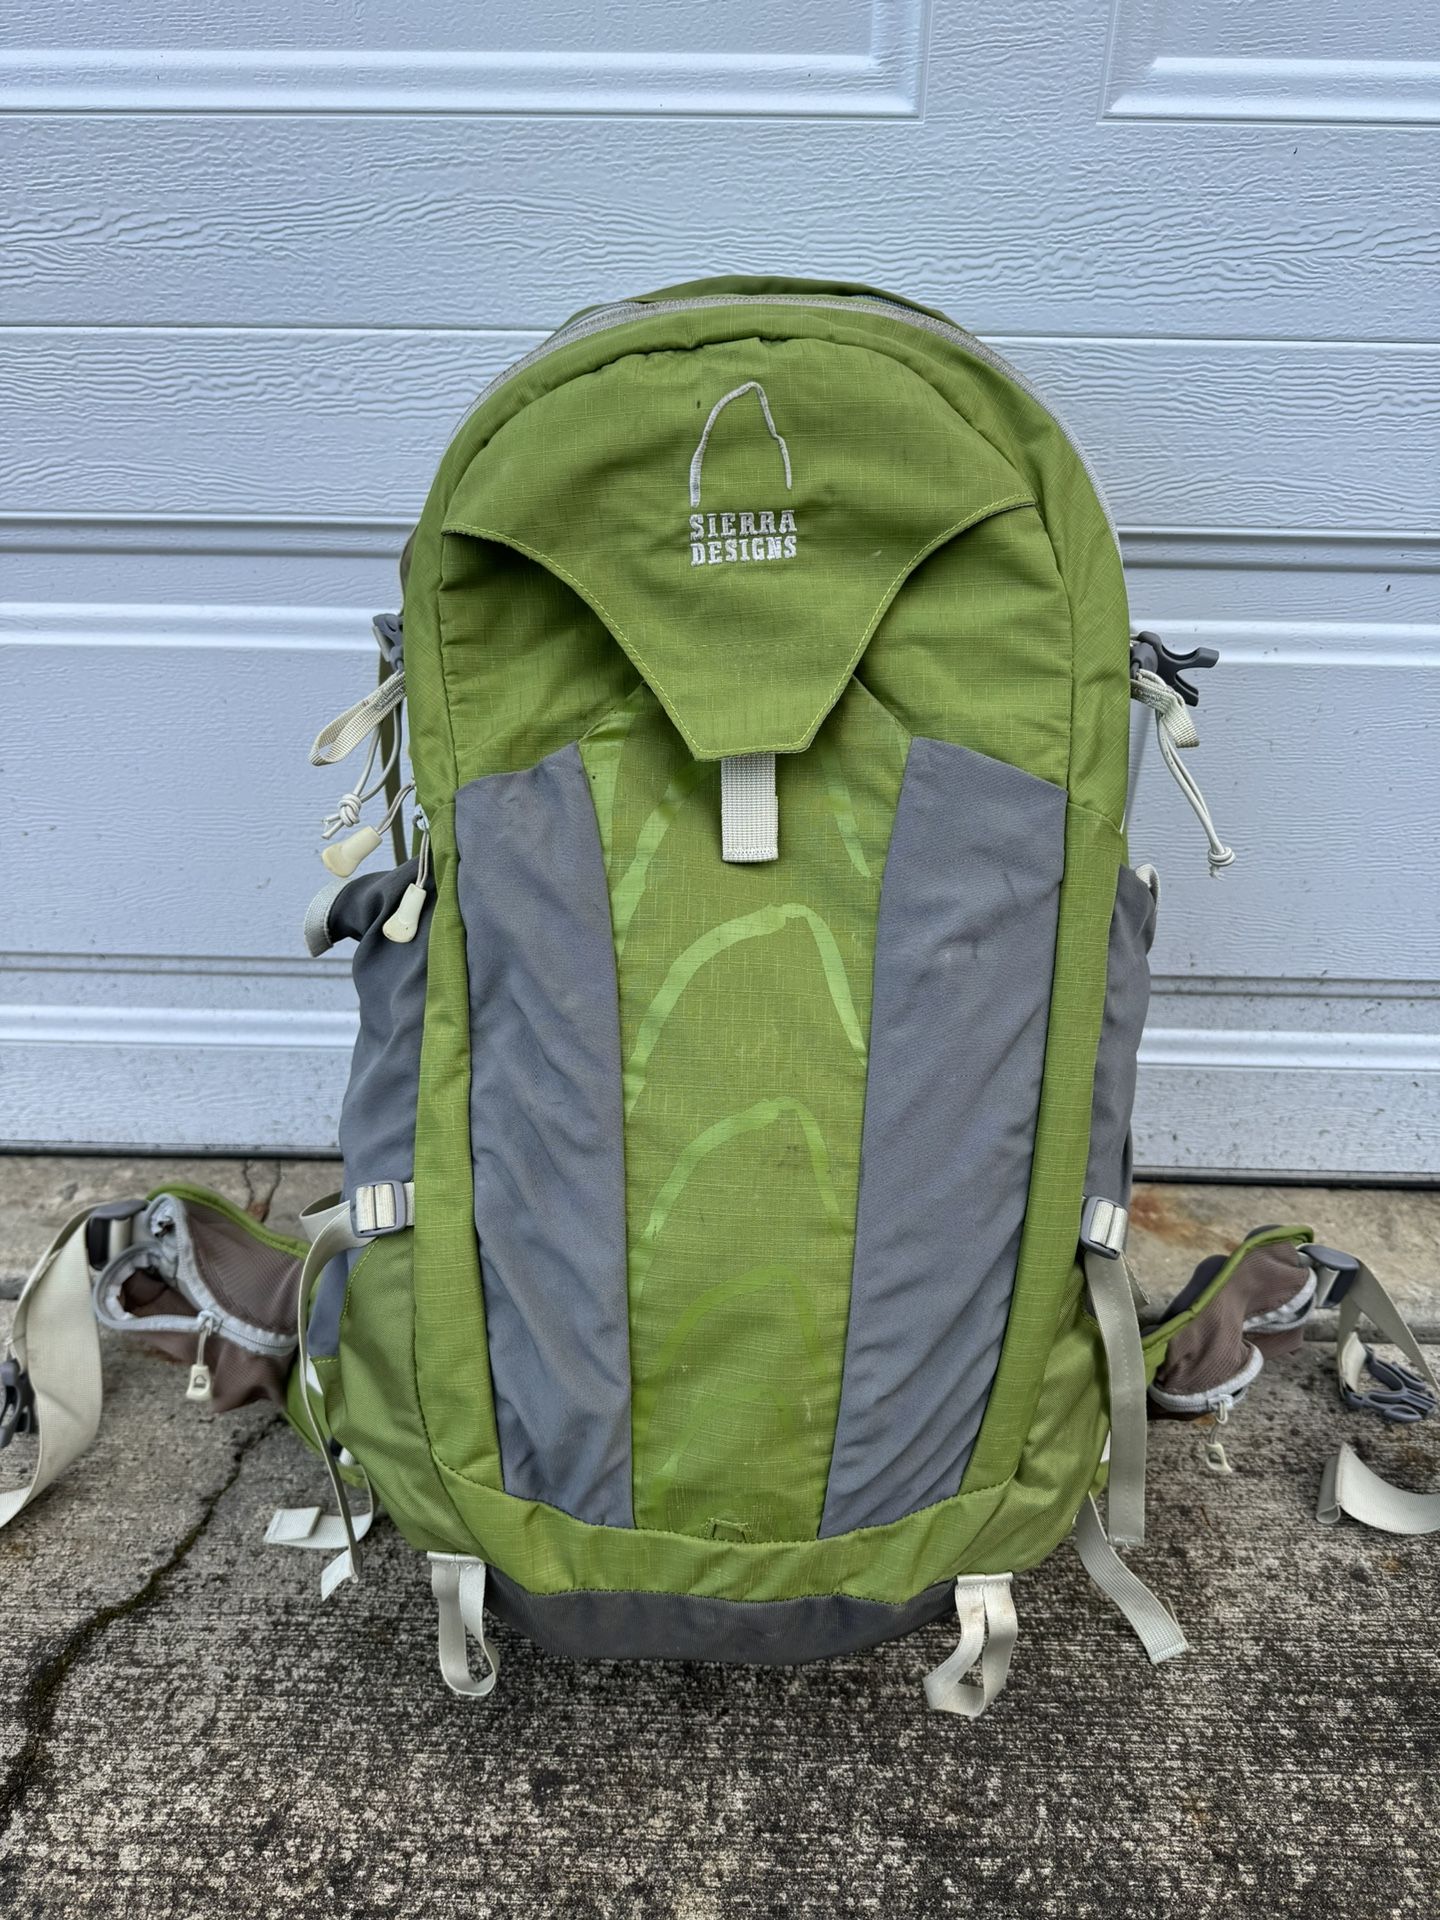 Sierra Designs Herald 30L Hiking Backpack